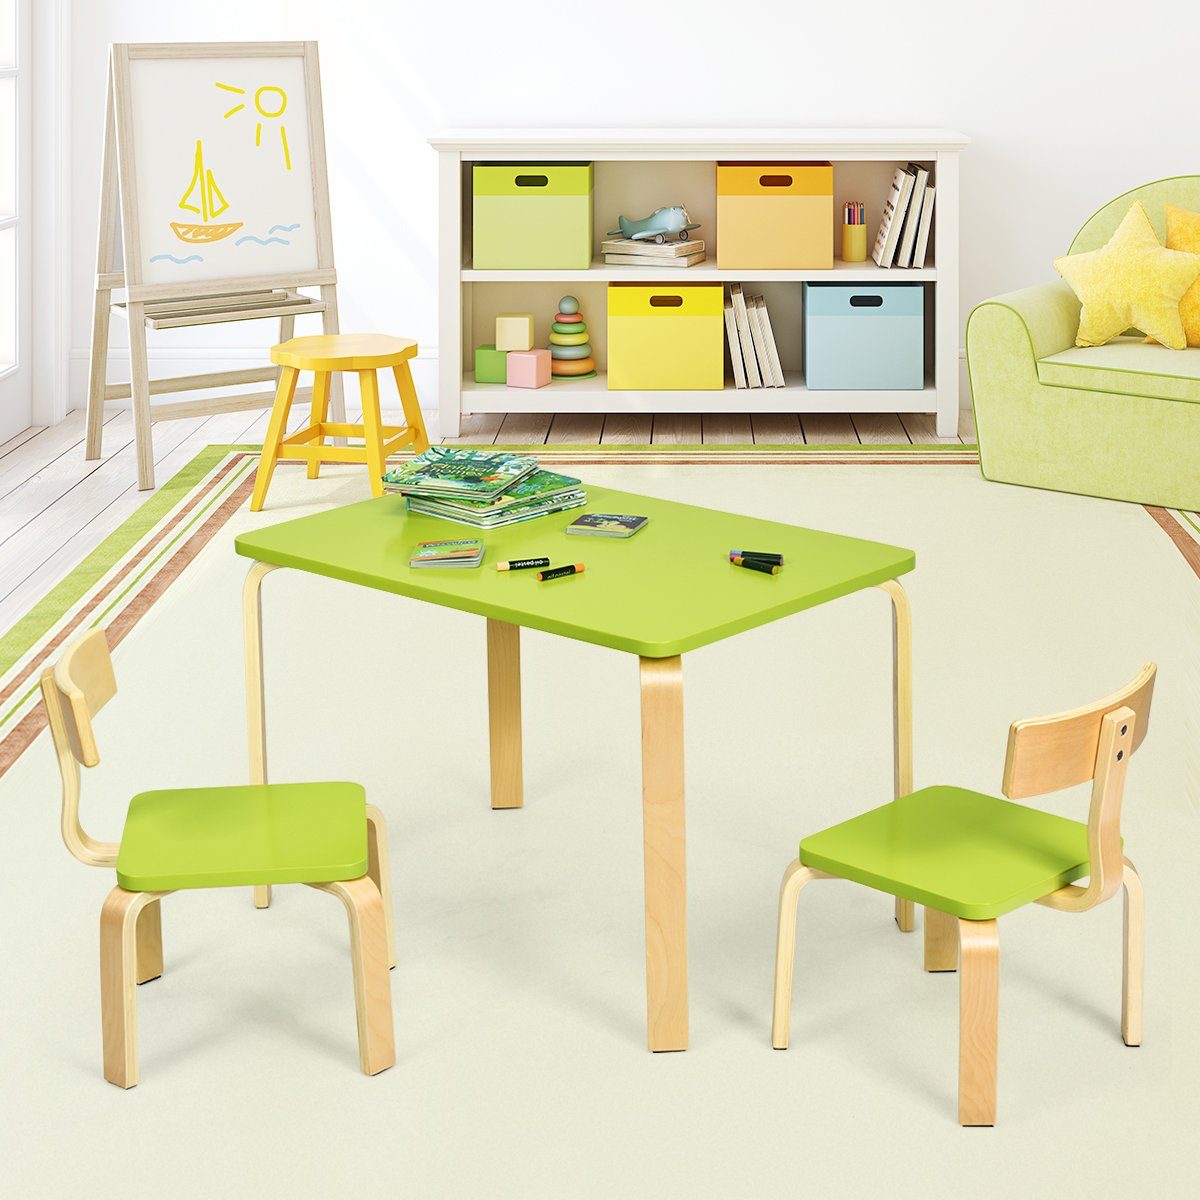 Holz mit 2 Kinderstühlen, Kindersitzgruppe, Kindertisch Grün COSTWAY